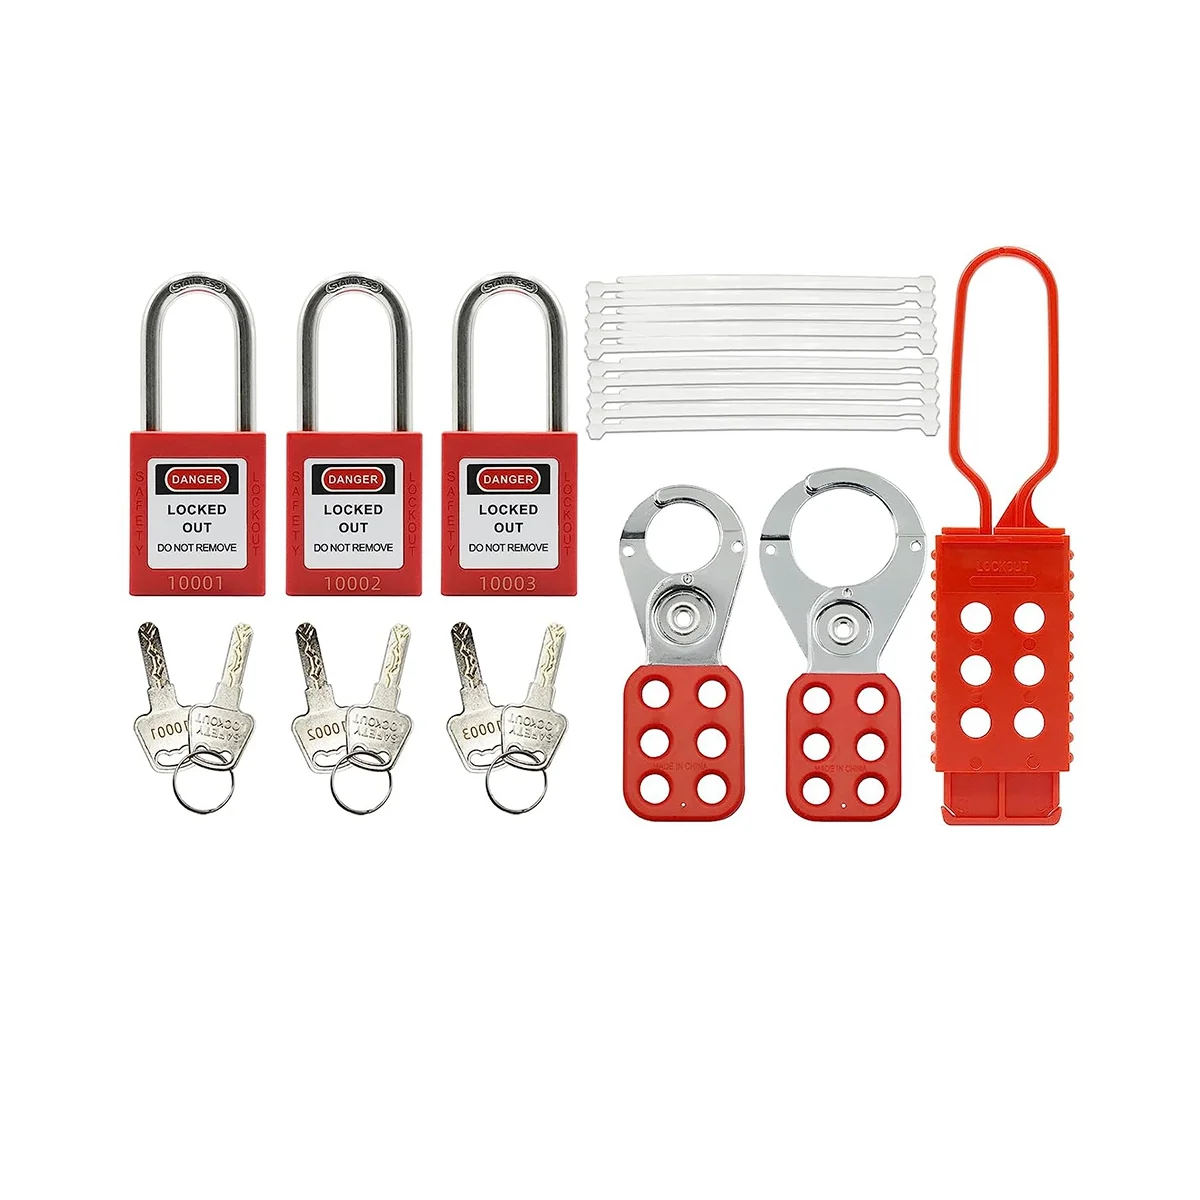 Комплект для разметки блокировки -Бирка для разметки блокировки, Нейлоновый галстук, Нейлоновая сумка для хранения, Навесной замок RedSafety, Замки для разметки блокировки (Красный комплект)